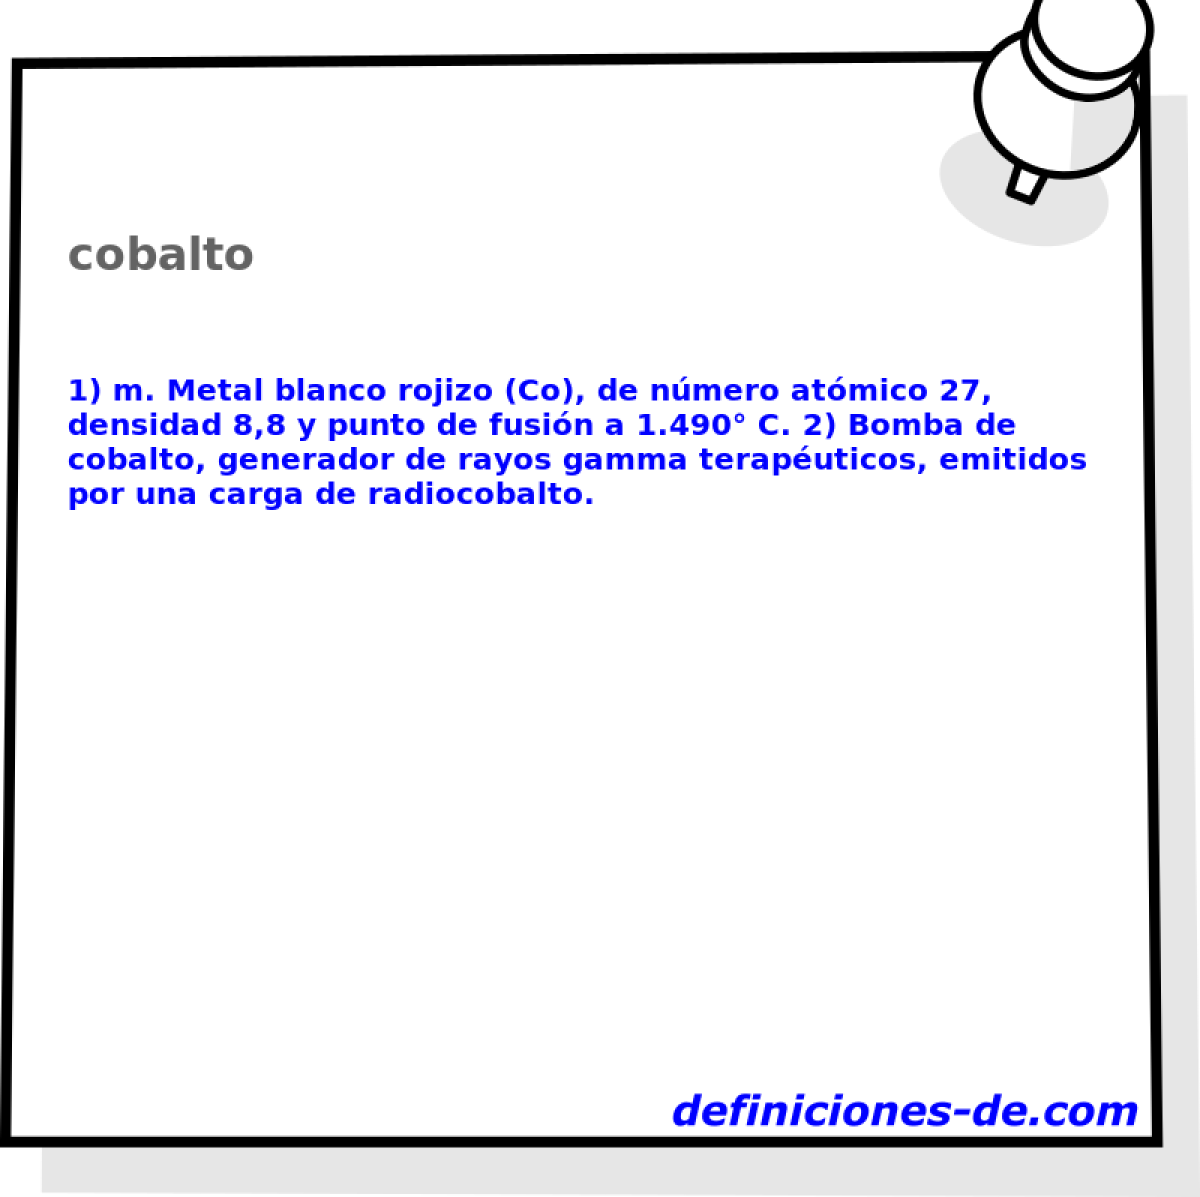 cobalto 